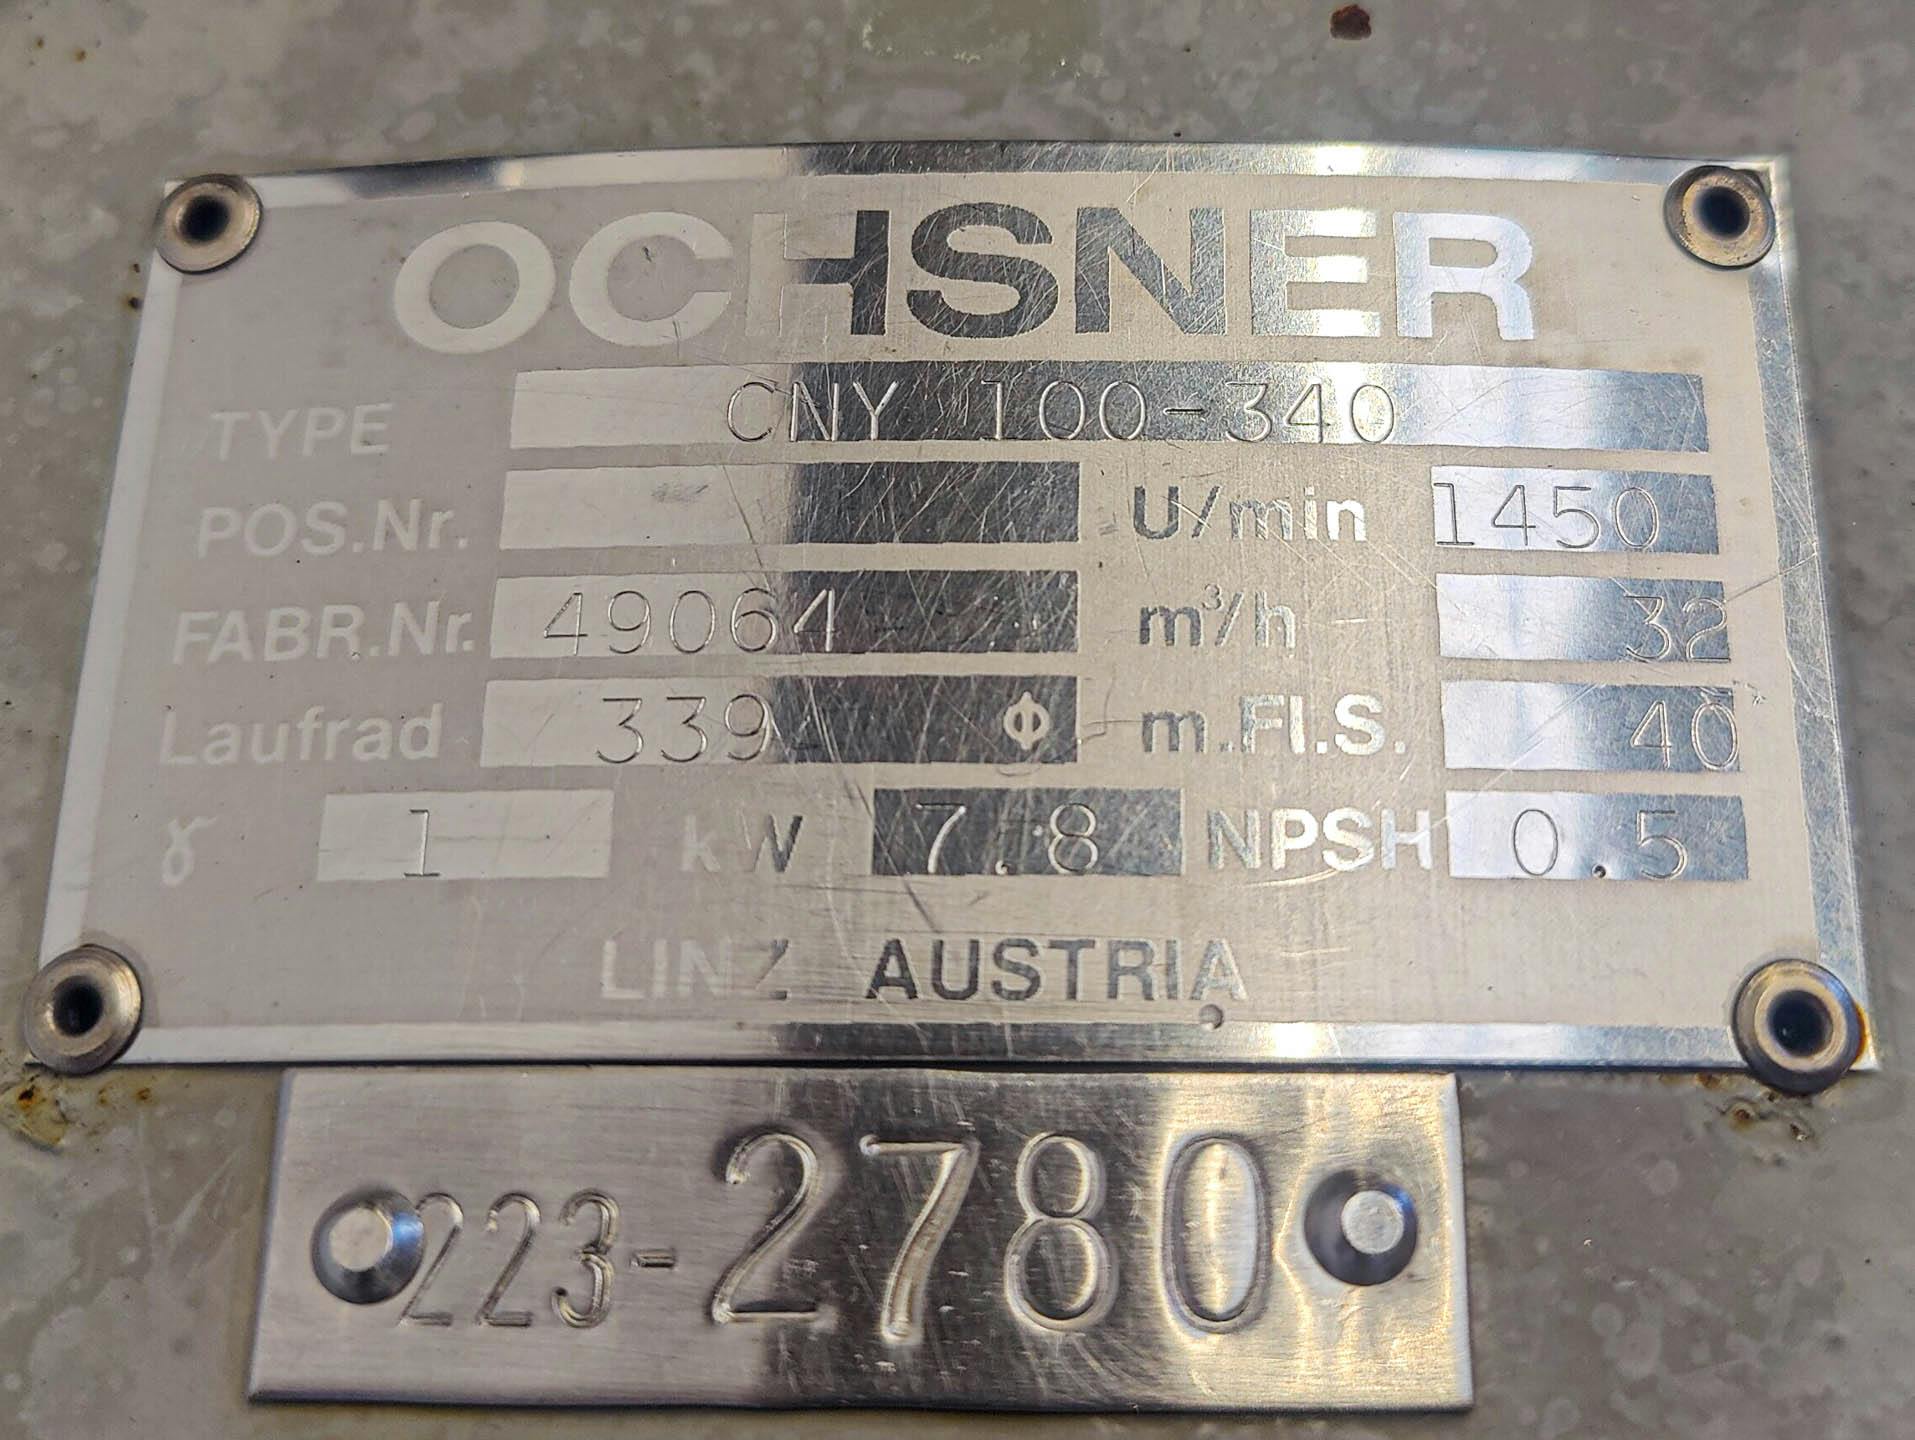 Ochsner CNY 100-340 - Centrifugal Pump - image 6